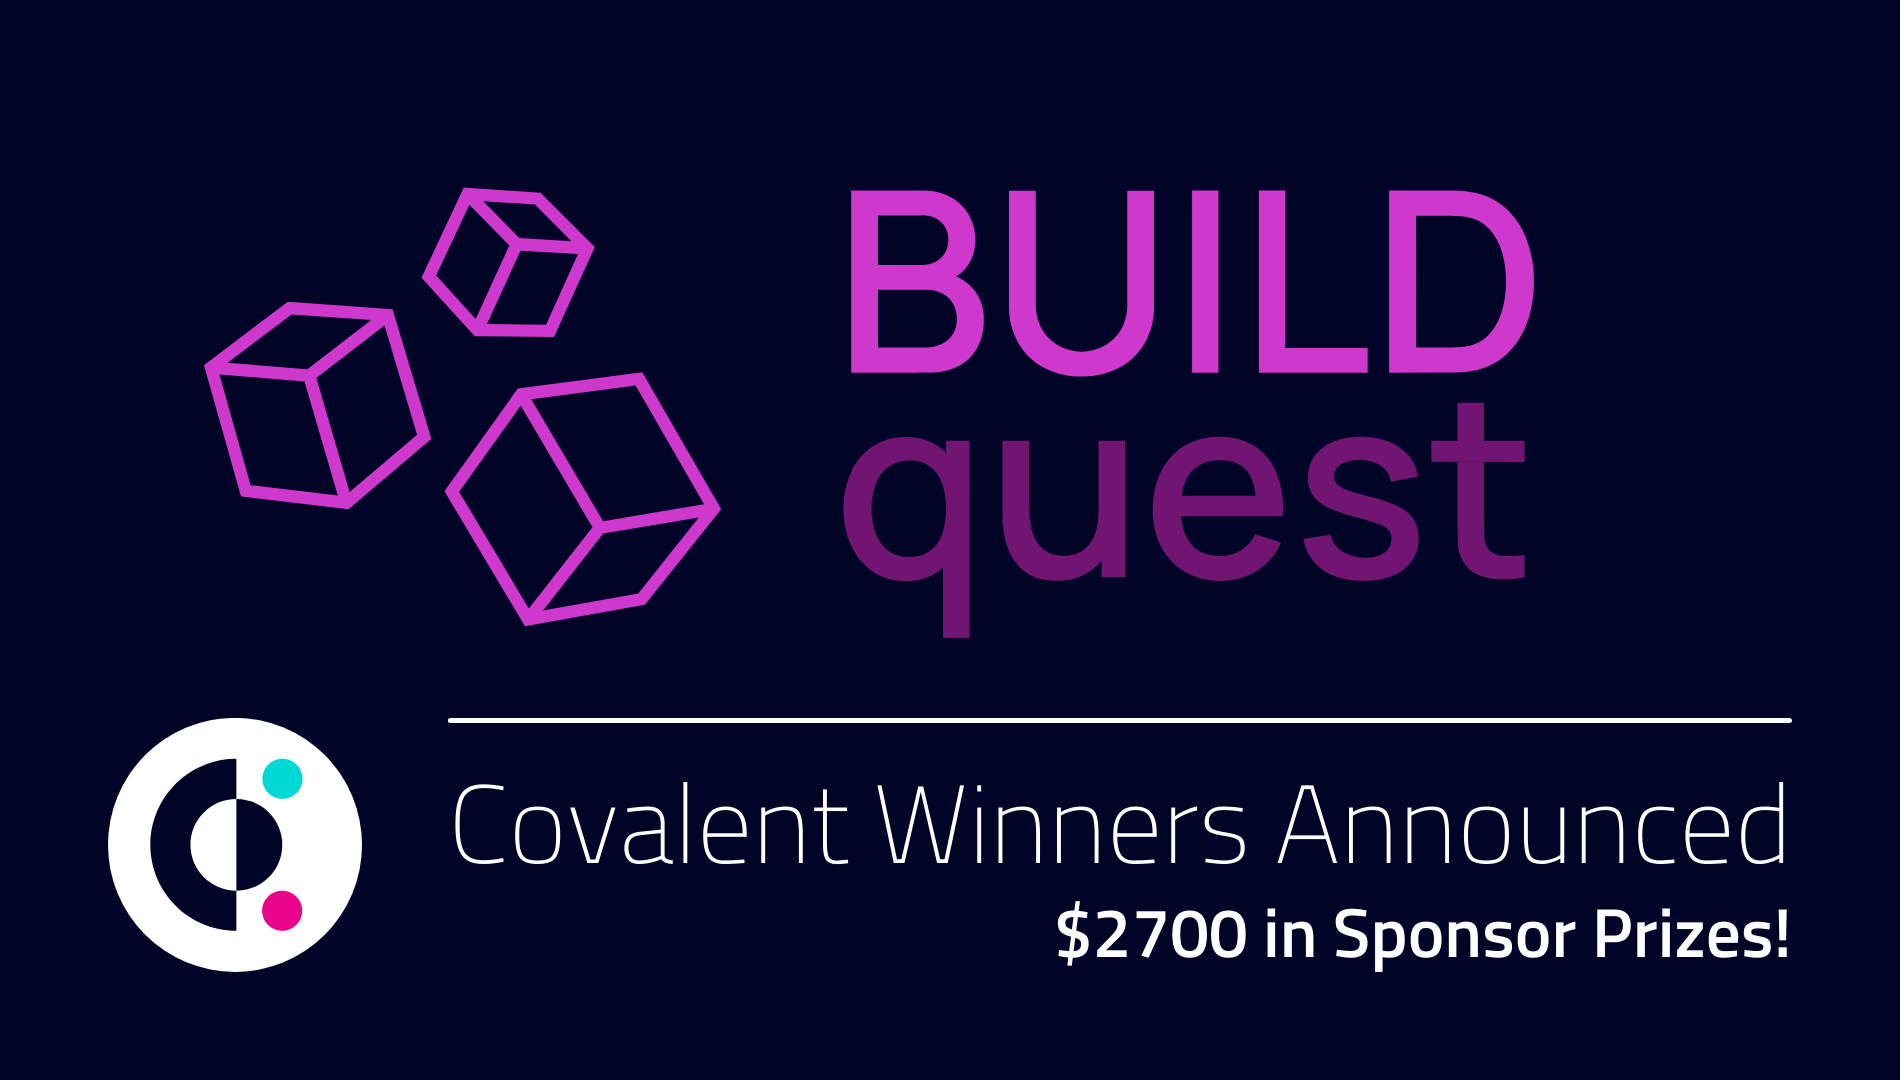 BuildQuest Hackathon - Covalent Winners Announced!